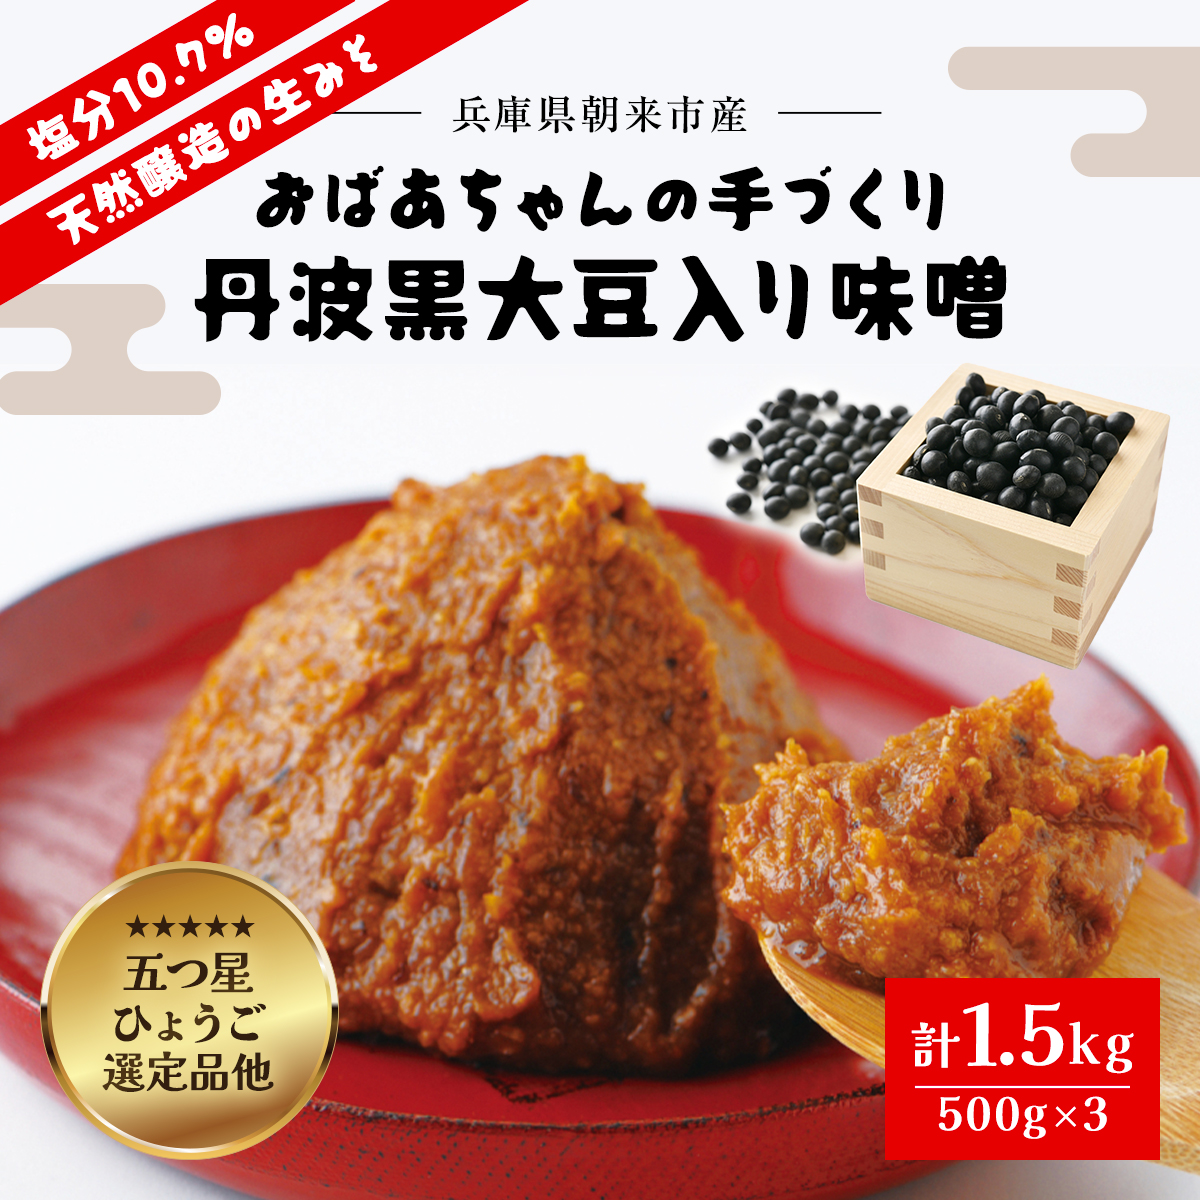 おばあちゃんの手づくり丹波黒大豆入り味噌 (500g×3) 兵庫県 朝来市 AS1AB7